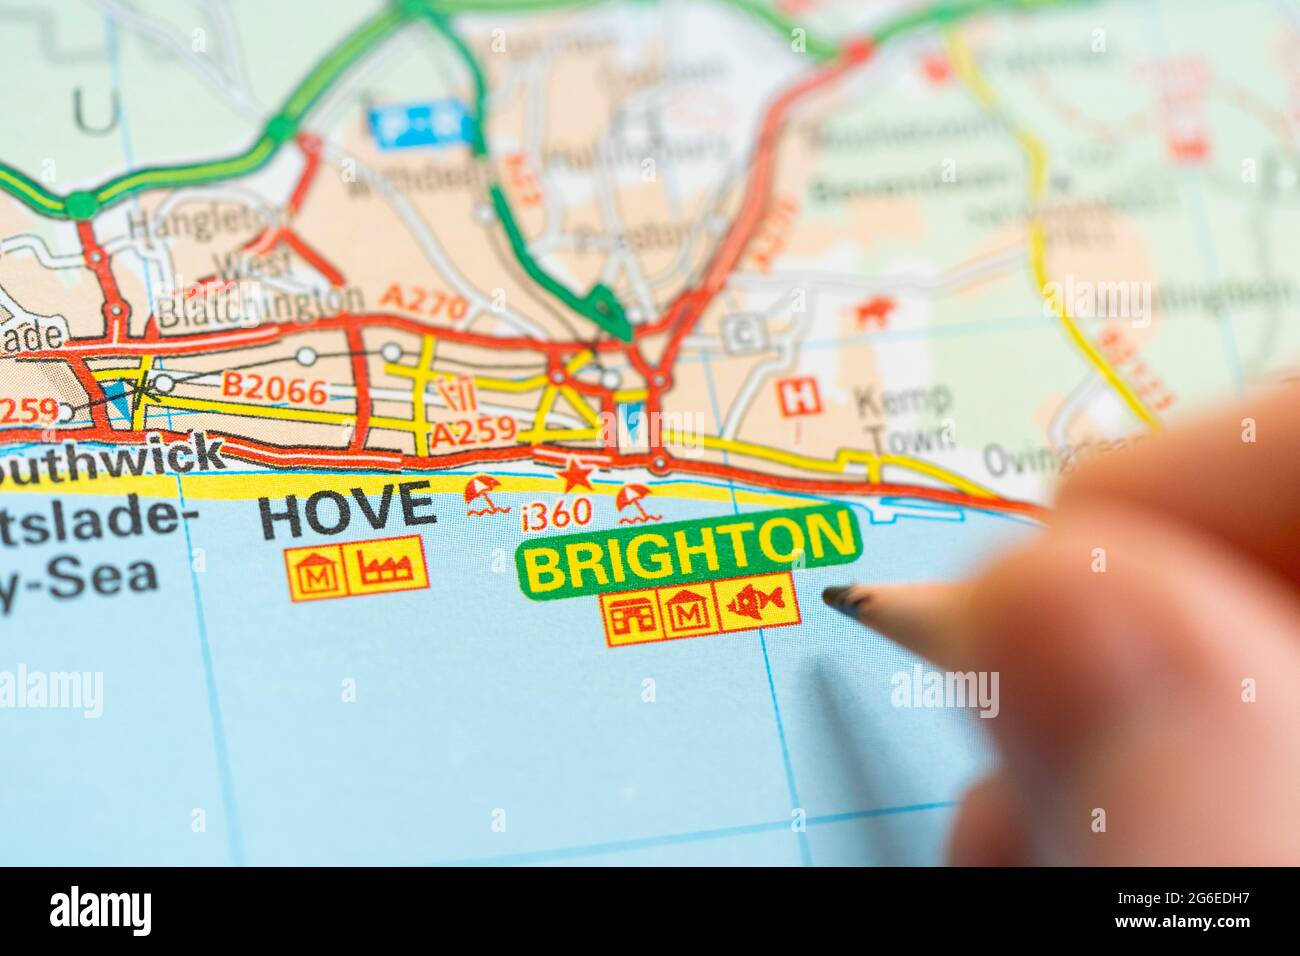 Nahaufnahme einer Seite in einem gedruckten Roadmap-Atlas mit einer Männerhand, die einen Bleistift hält und auf den Badeort Brighton am Ärmelkanal zeigt Stockfoto